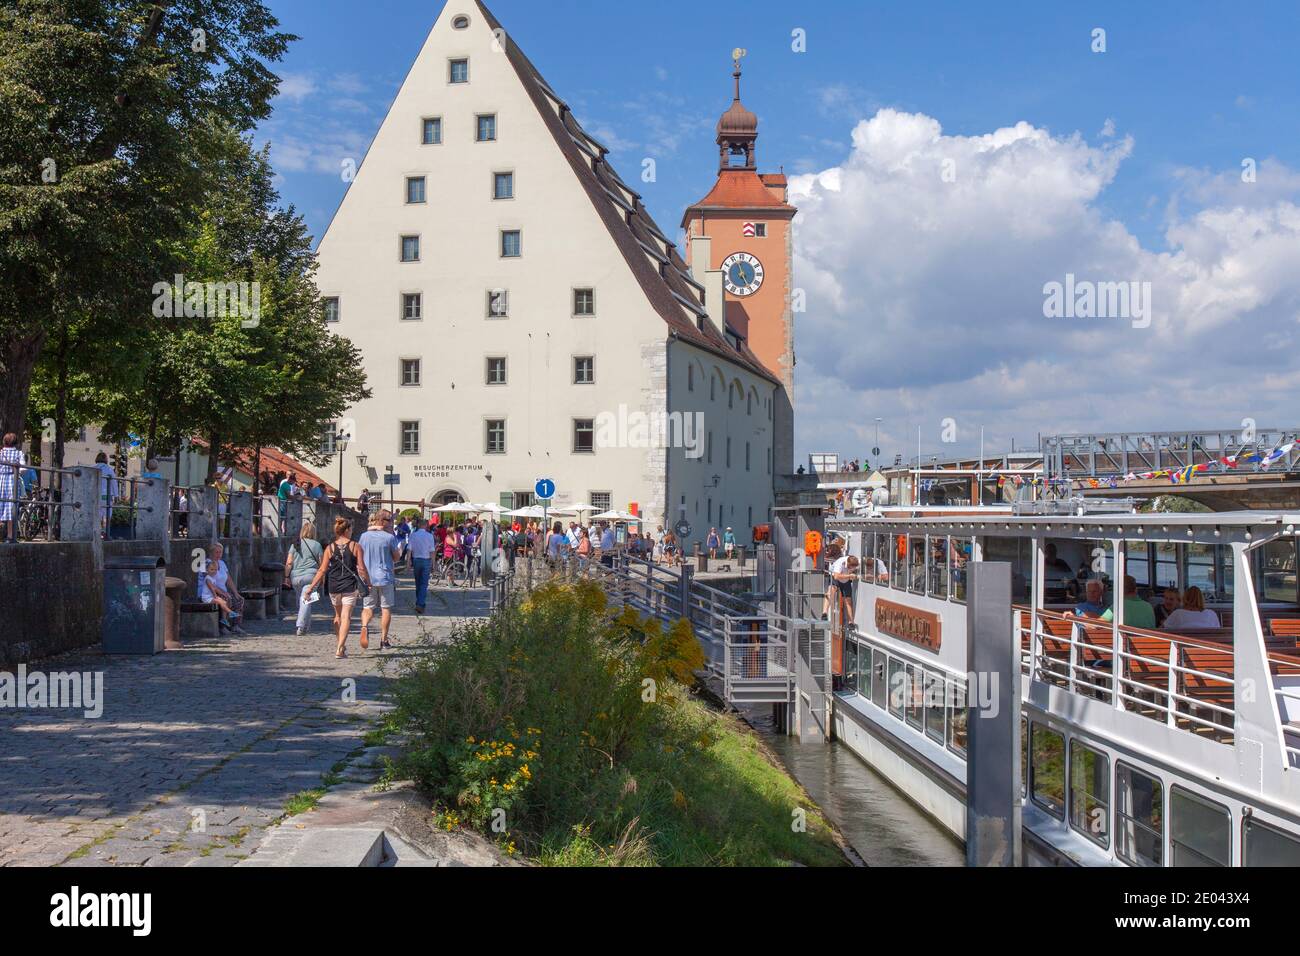 Vista lateral de Wharfside. Besucherzentrum Welterbe, Regensburg, Baviera, Alemania. Este museo se centra en la historia del puente de piedra de la ciudad. Foto de stock